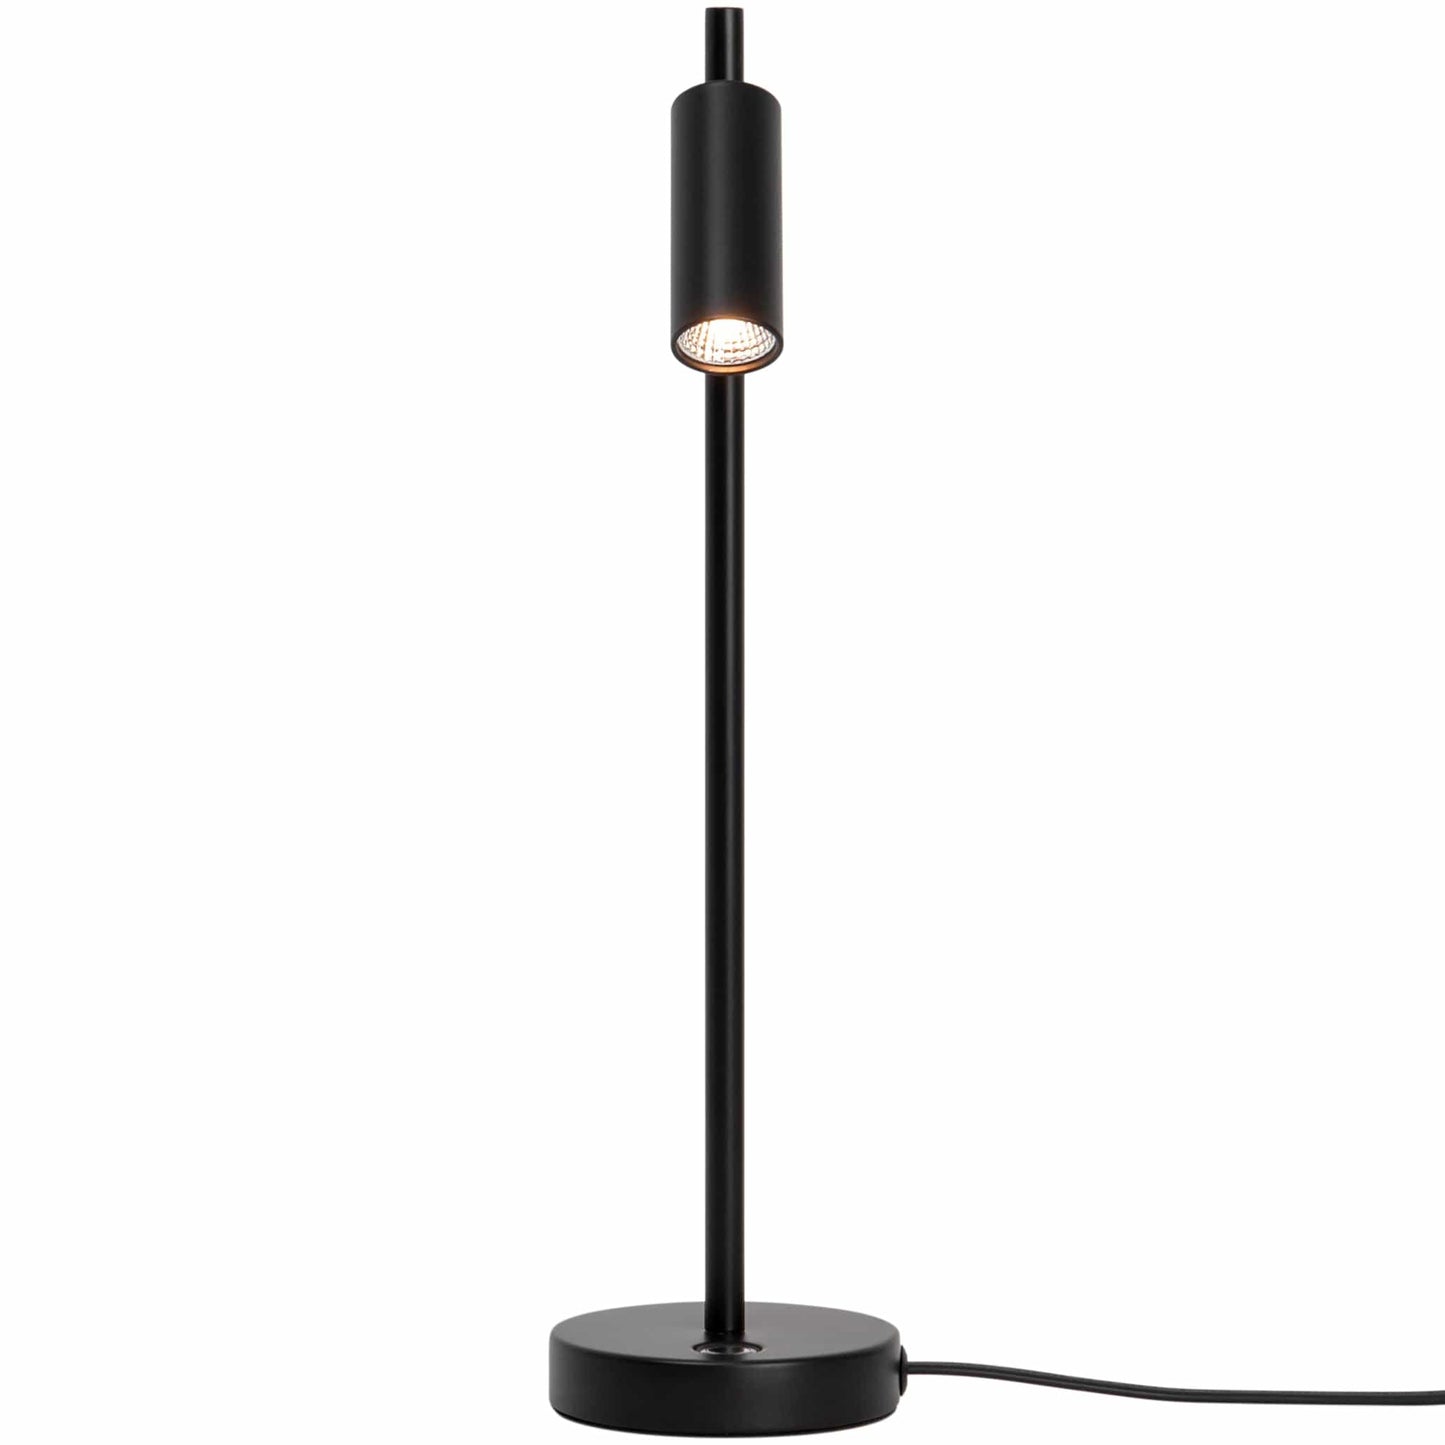 Nordlux Table Lamp Omari Table Lamp, black or white